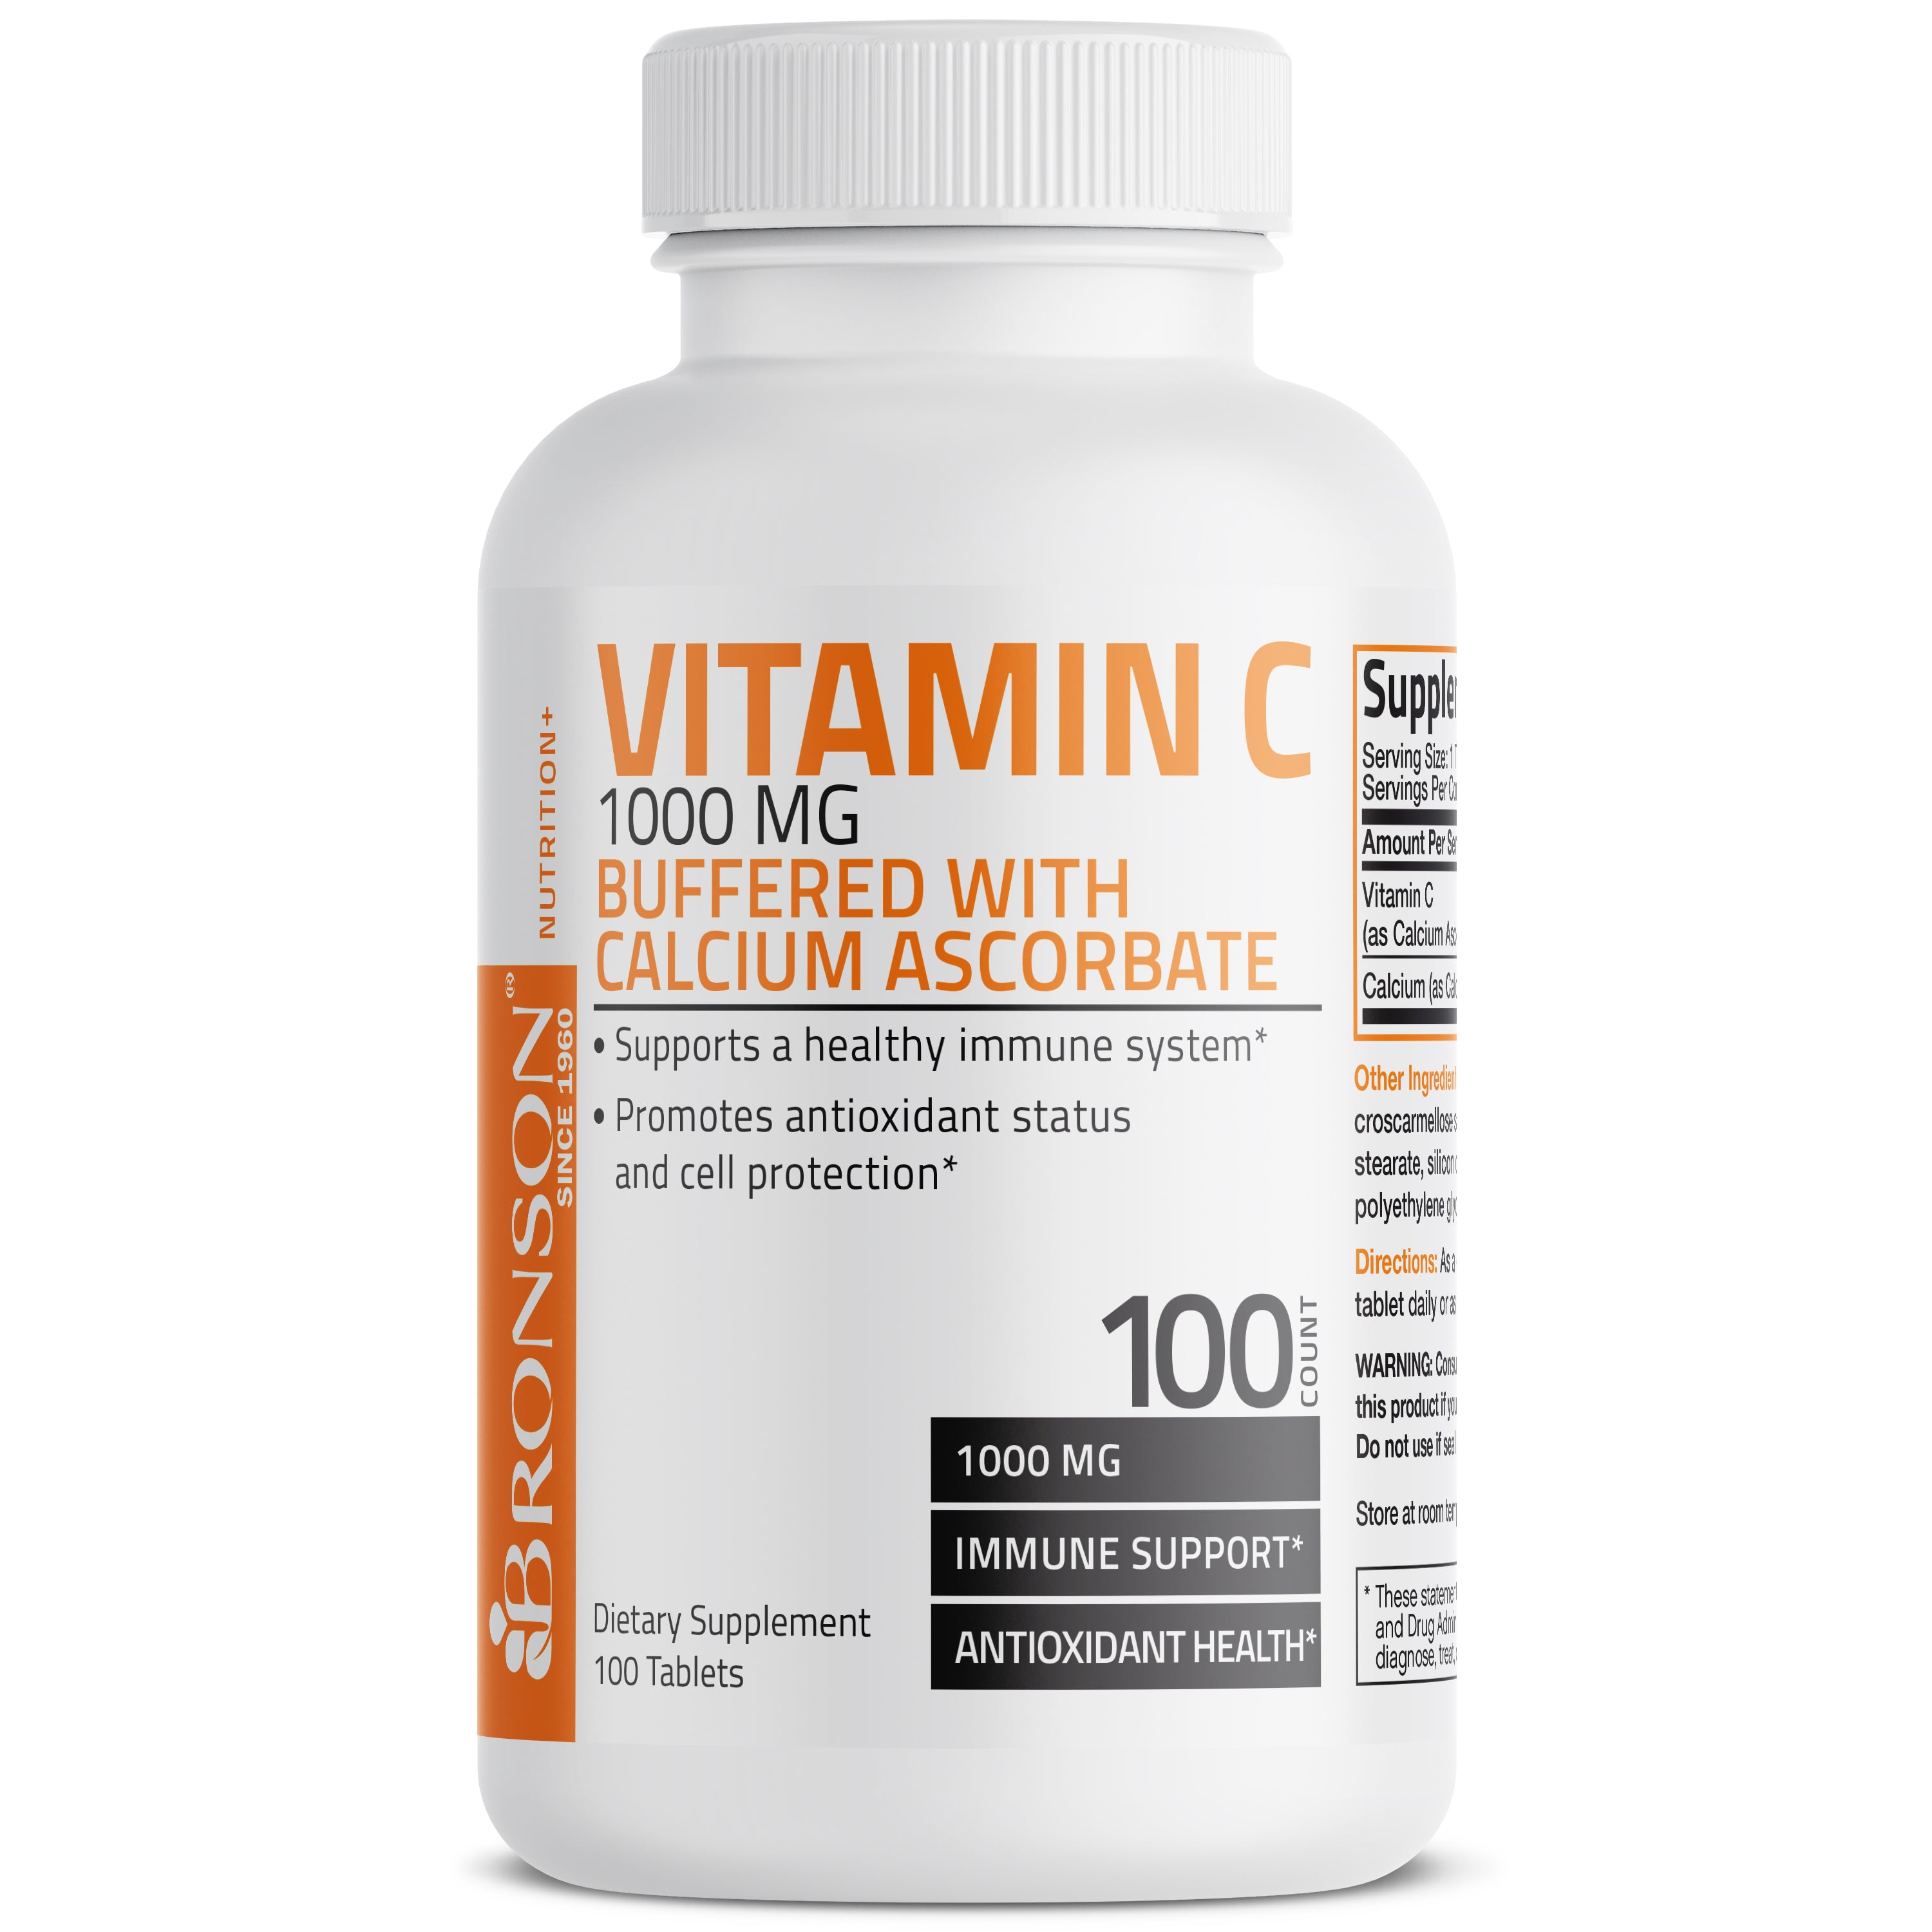 Buffered Vitamin C Calcium Ascorbate - 1,000 mg view 9 of 6